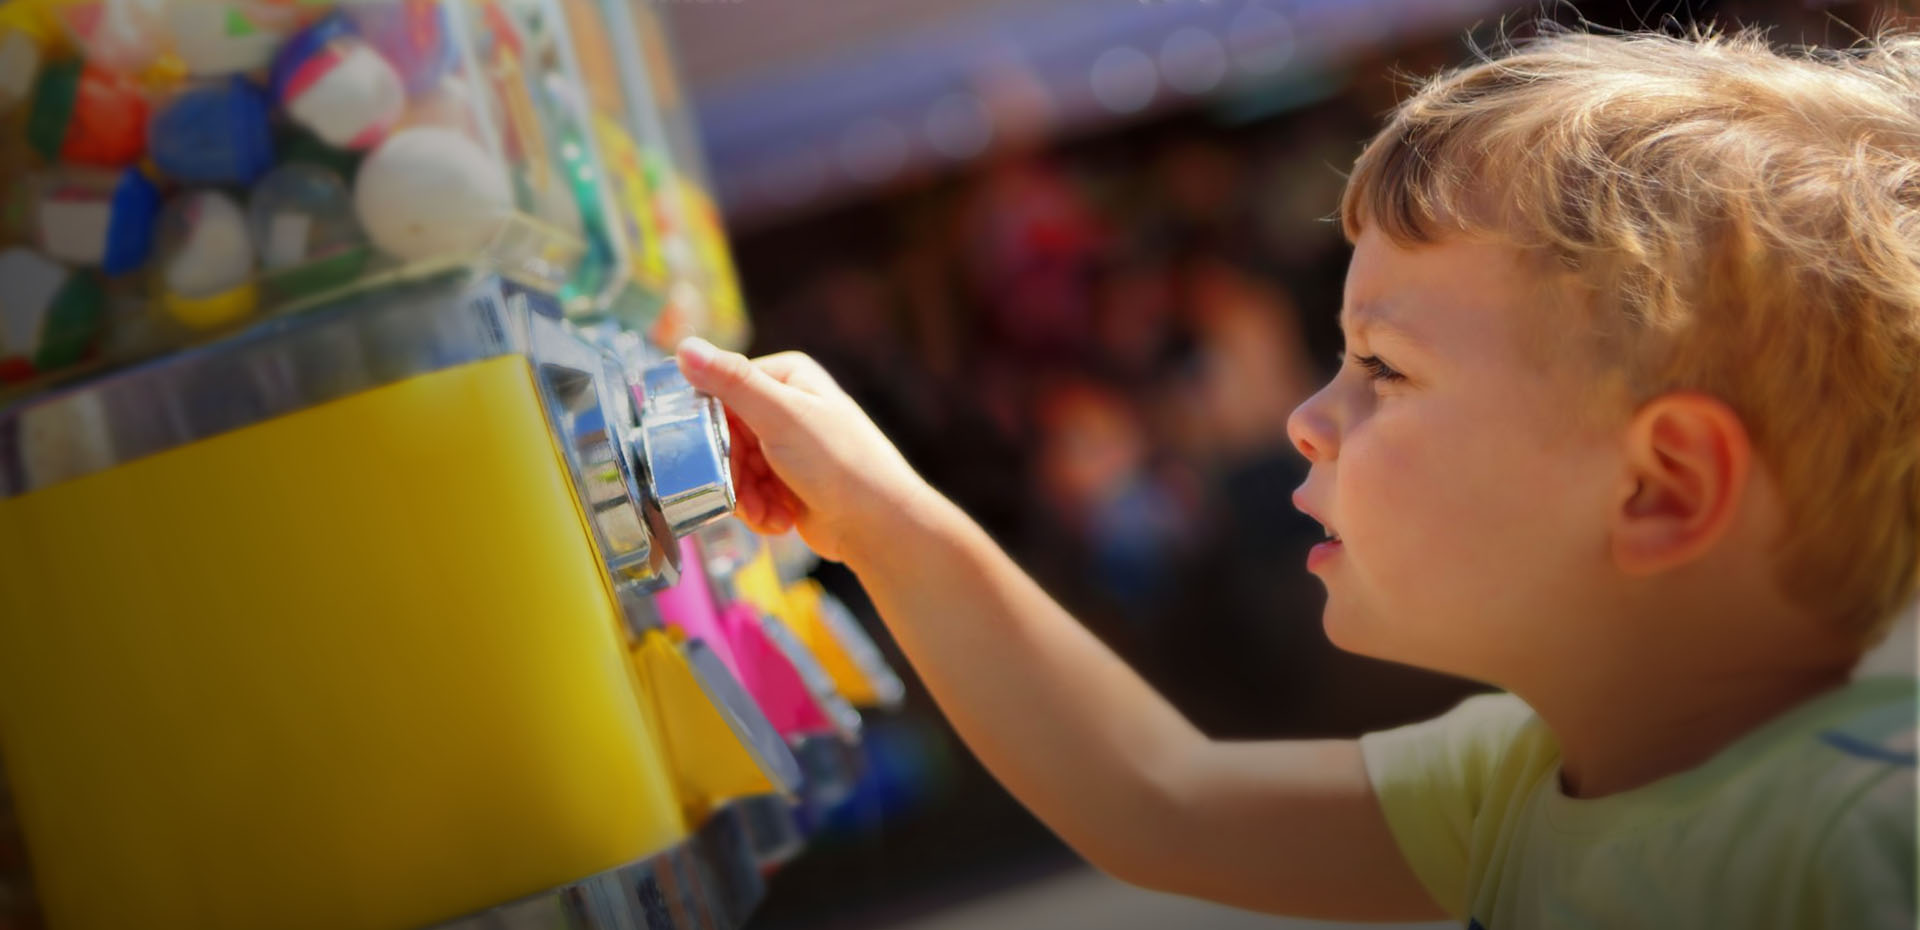 Installers Of Toys Vending Machines For Restaurants Hinkley